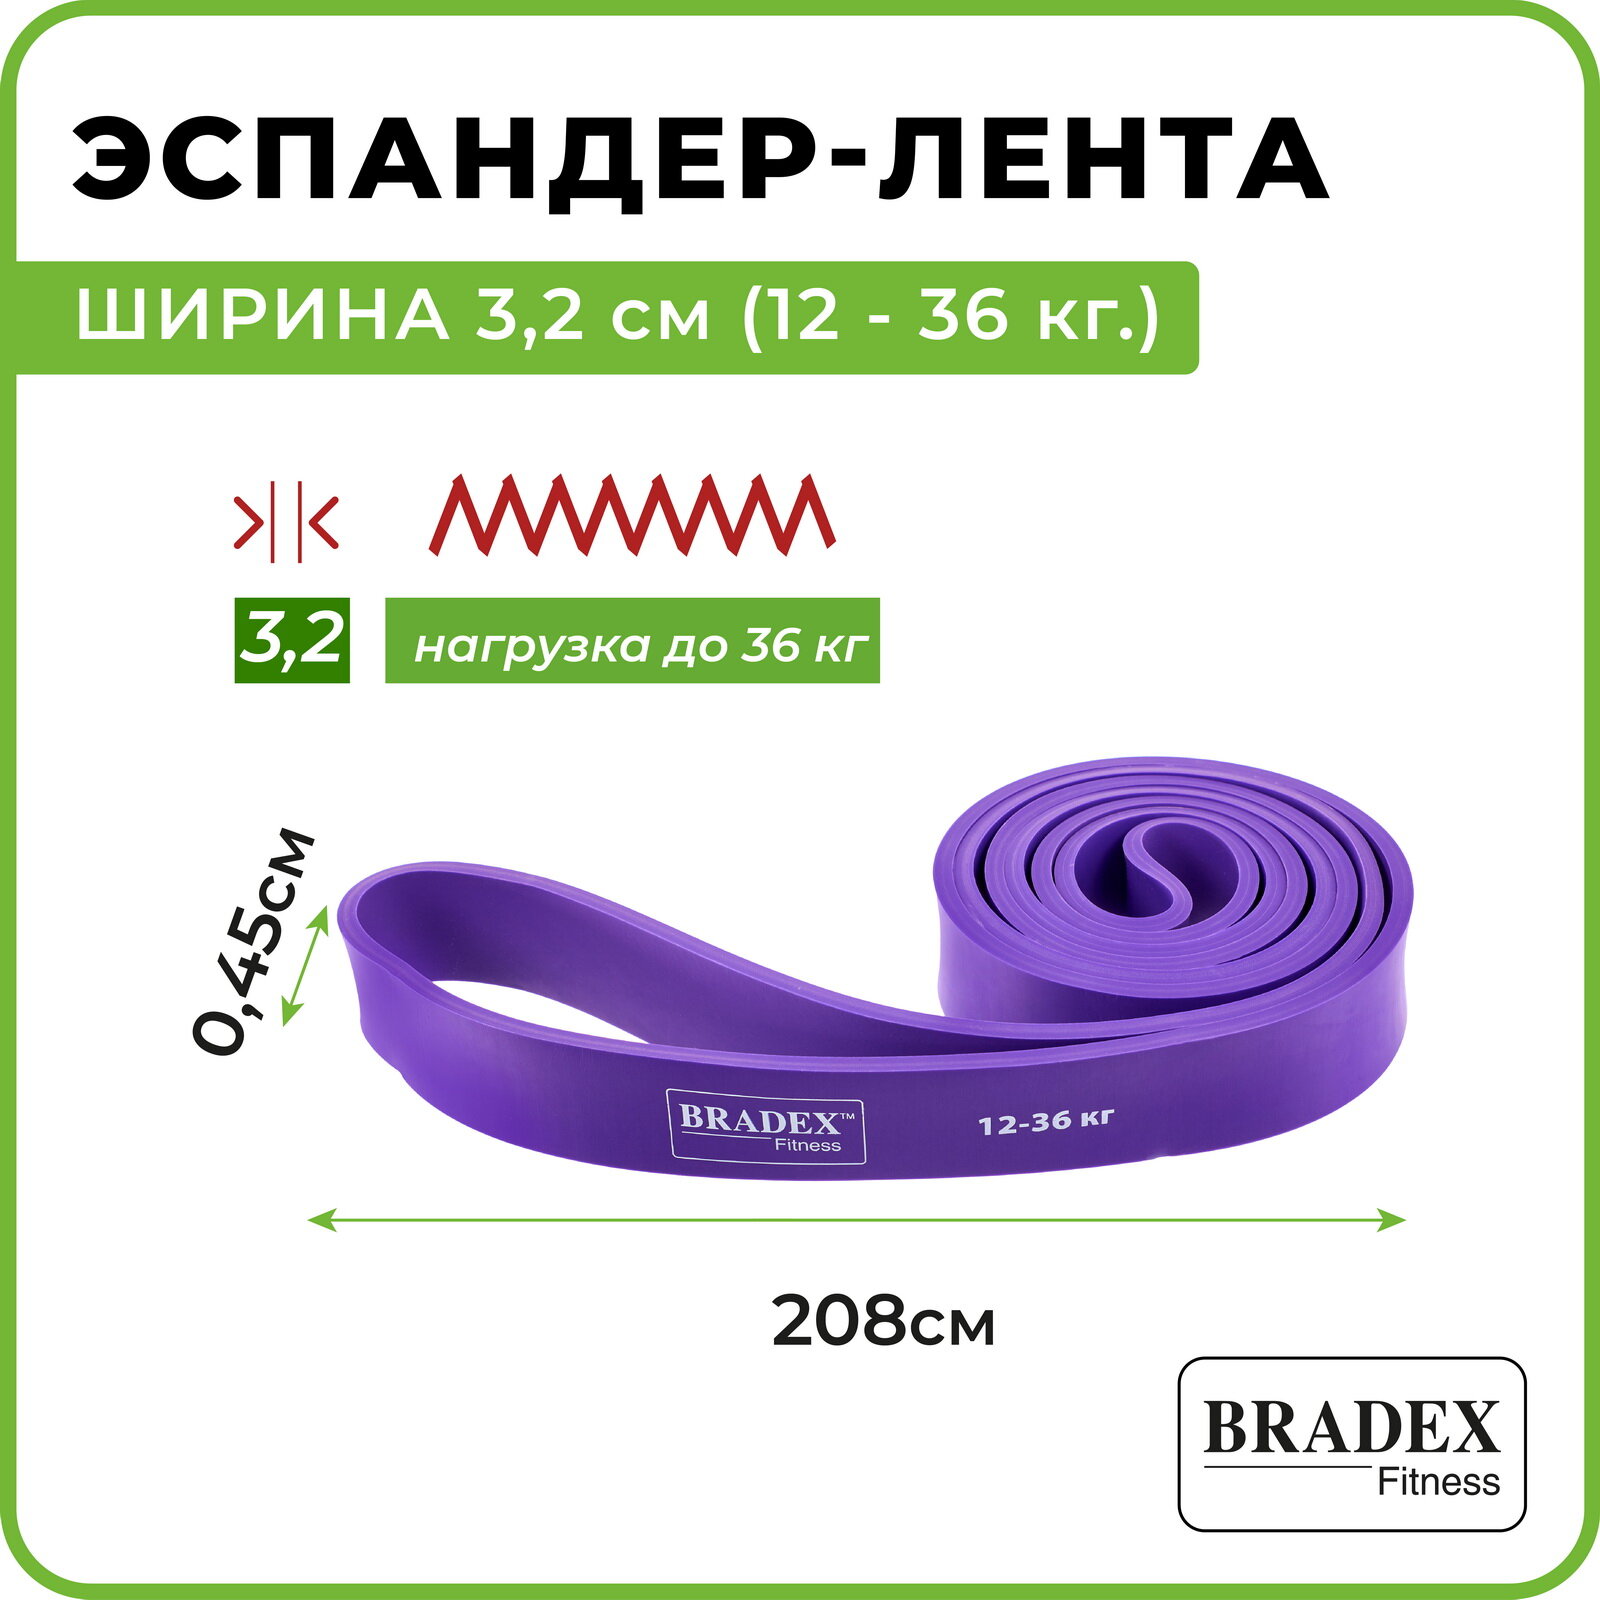 Эспандер-лента Bradex, ширина 3,2 см (12 - 36 кг.), - фото №2